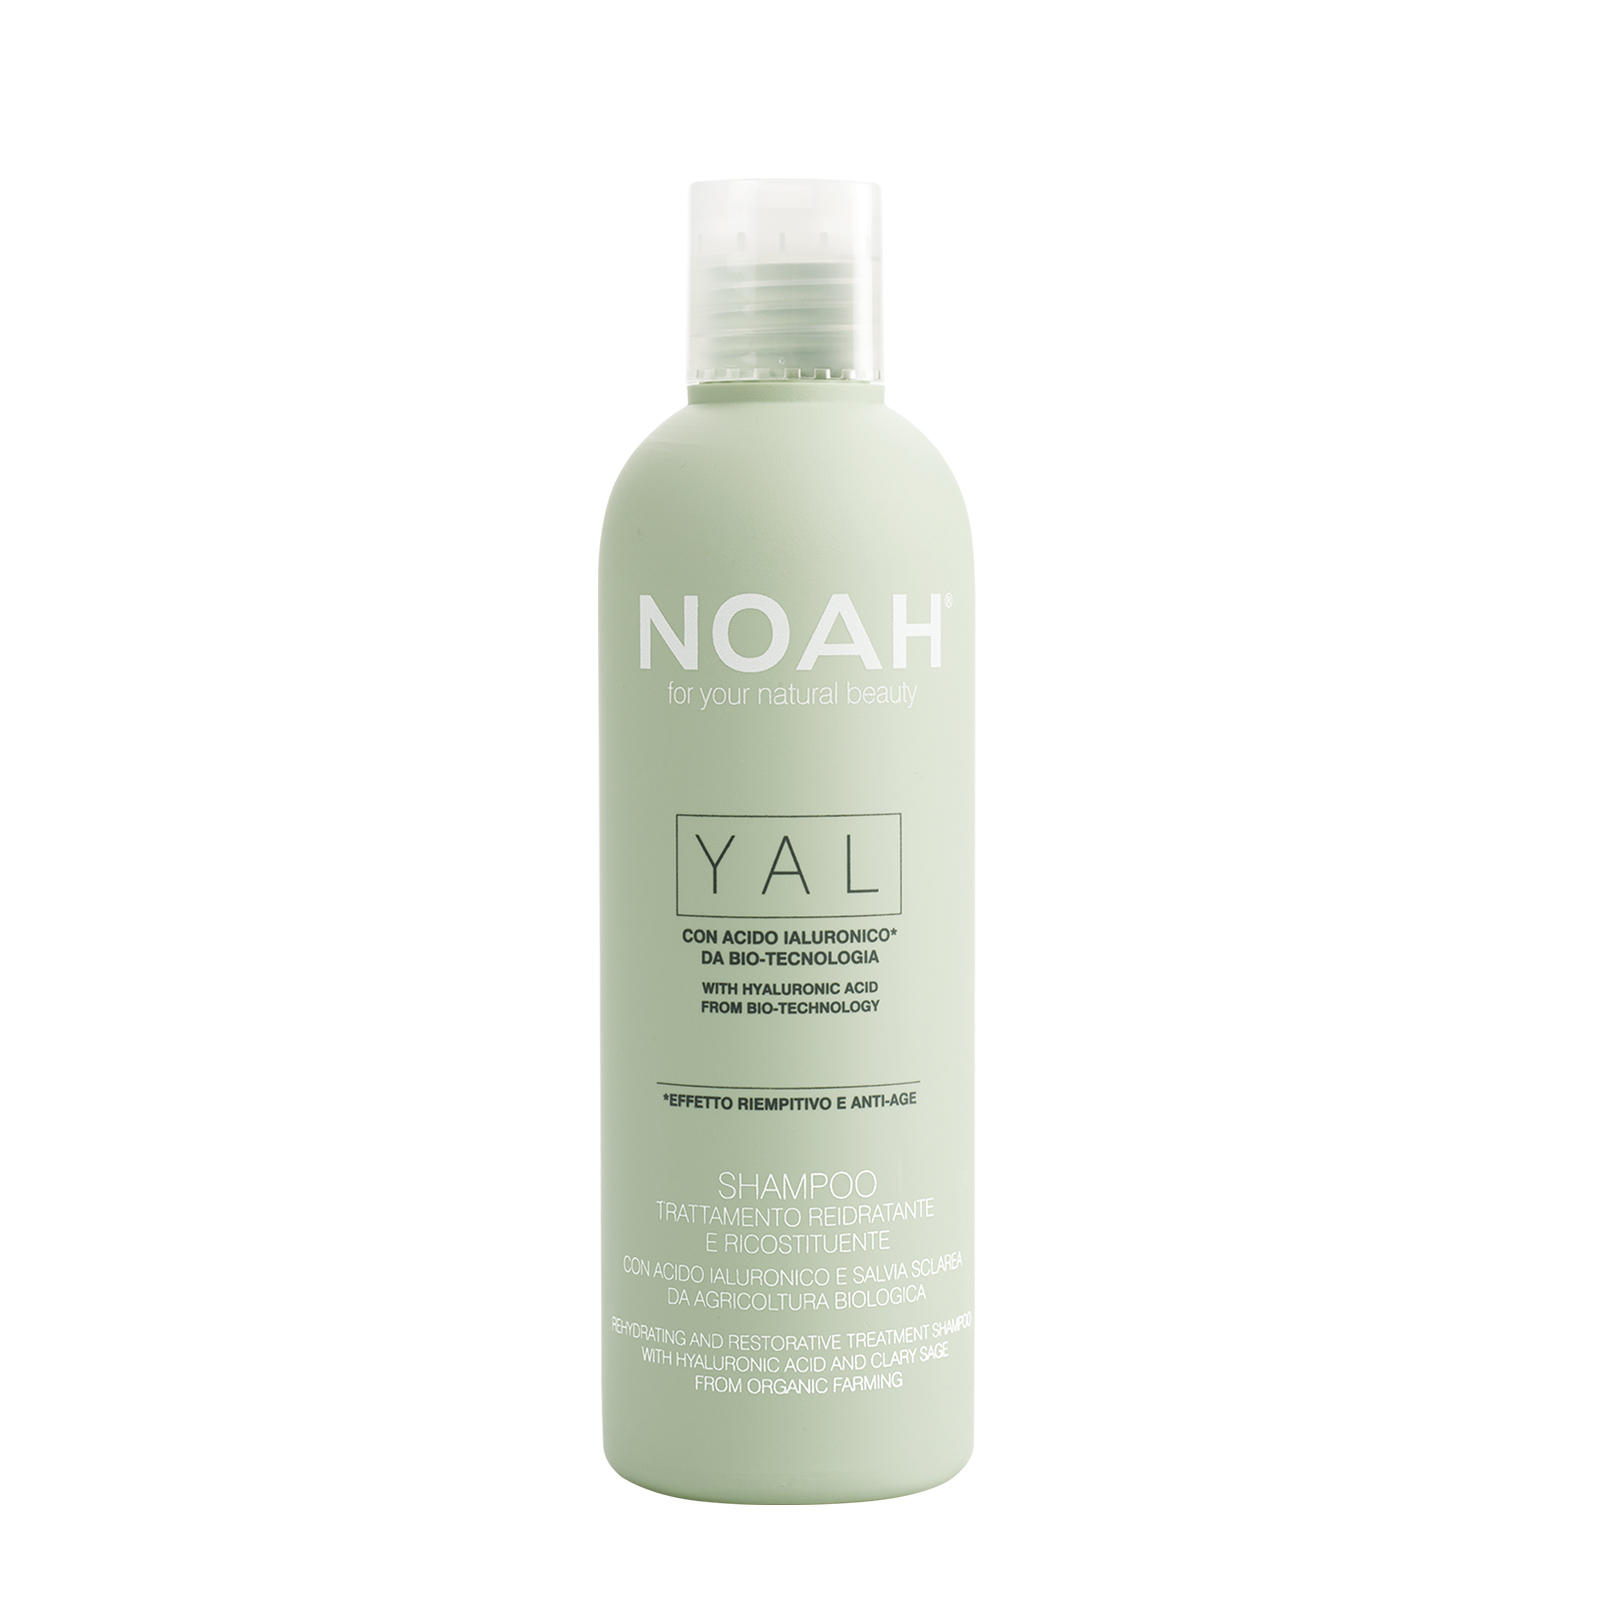 YAL-Shampoo-trattamento-reidratante-e-ricostituente_NOAH